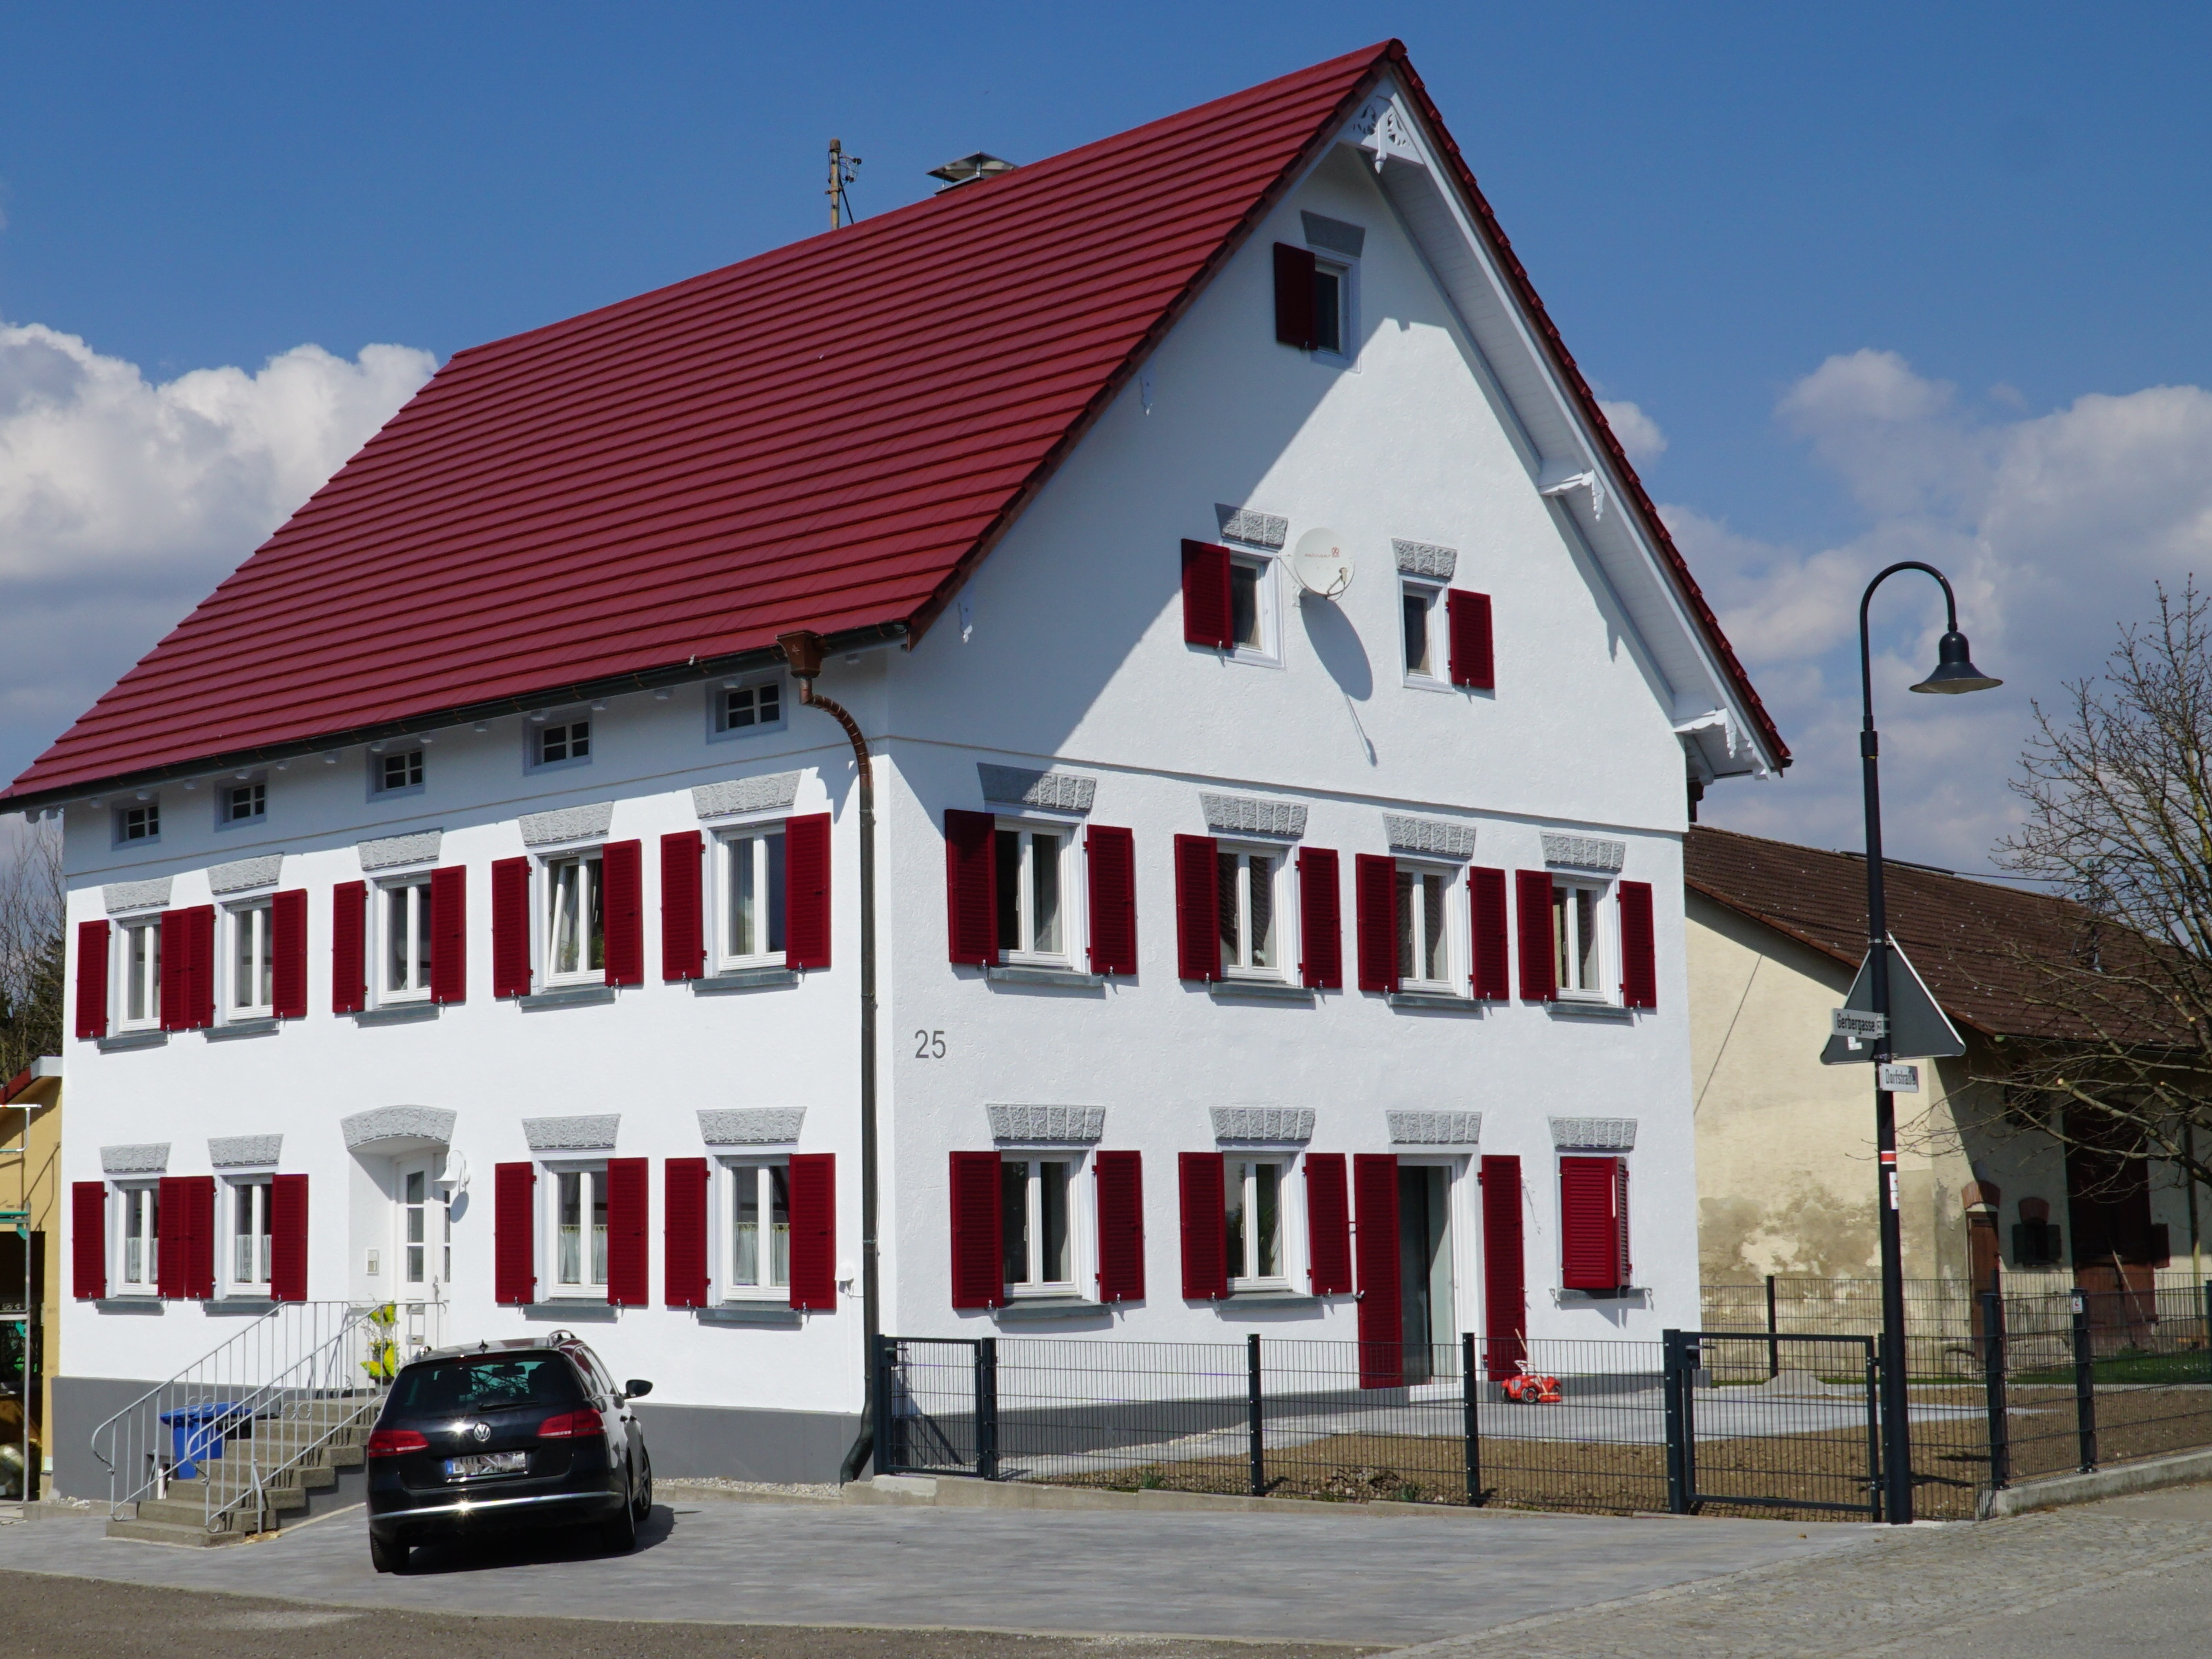  Ehemaliges Schwesternhaus Möhringen jetzt privates Anwesen 